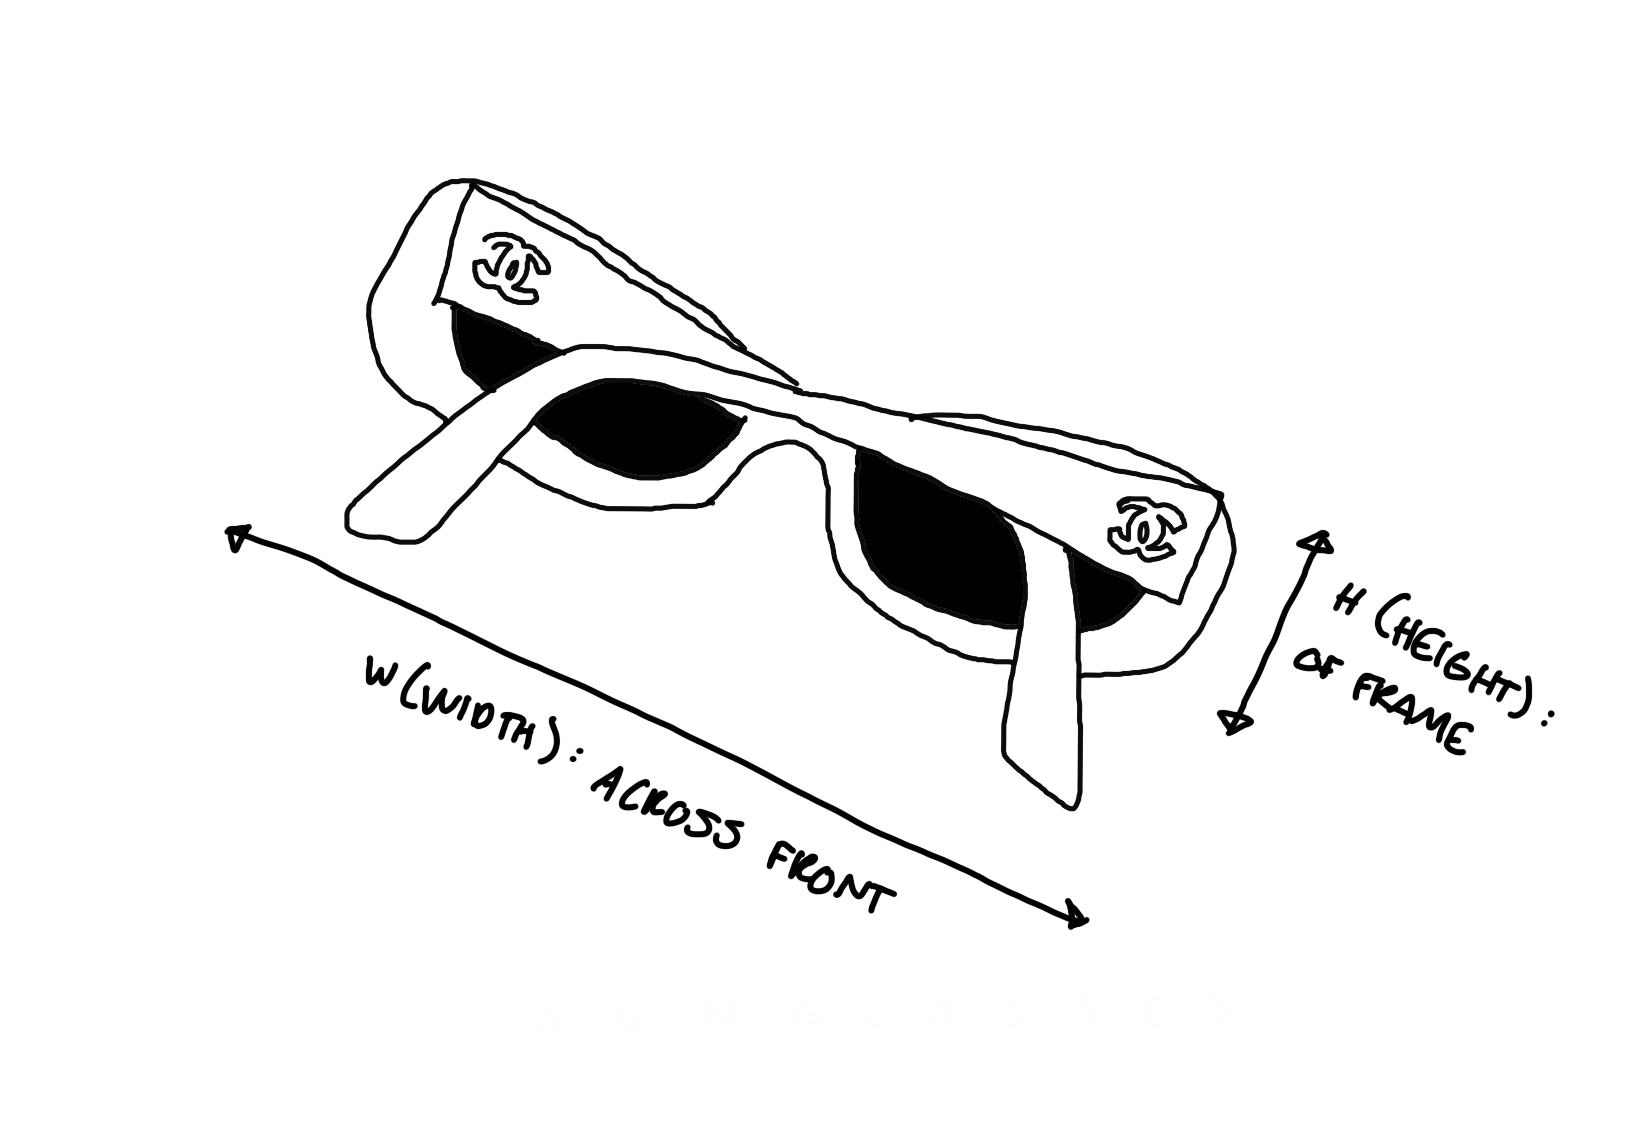 Chanel Silver Micro Rimless Logo Sunglasses